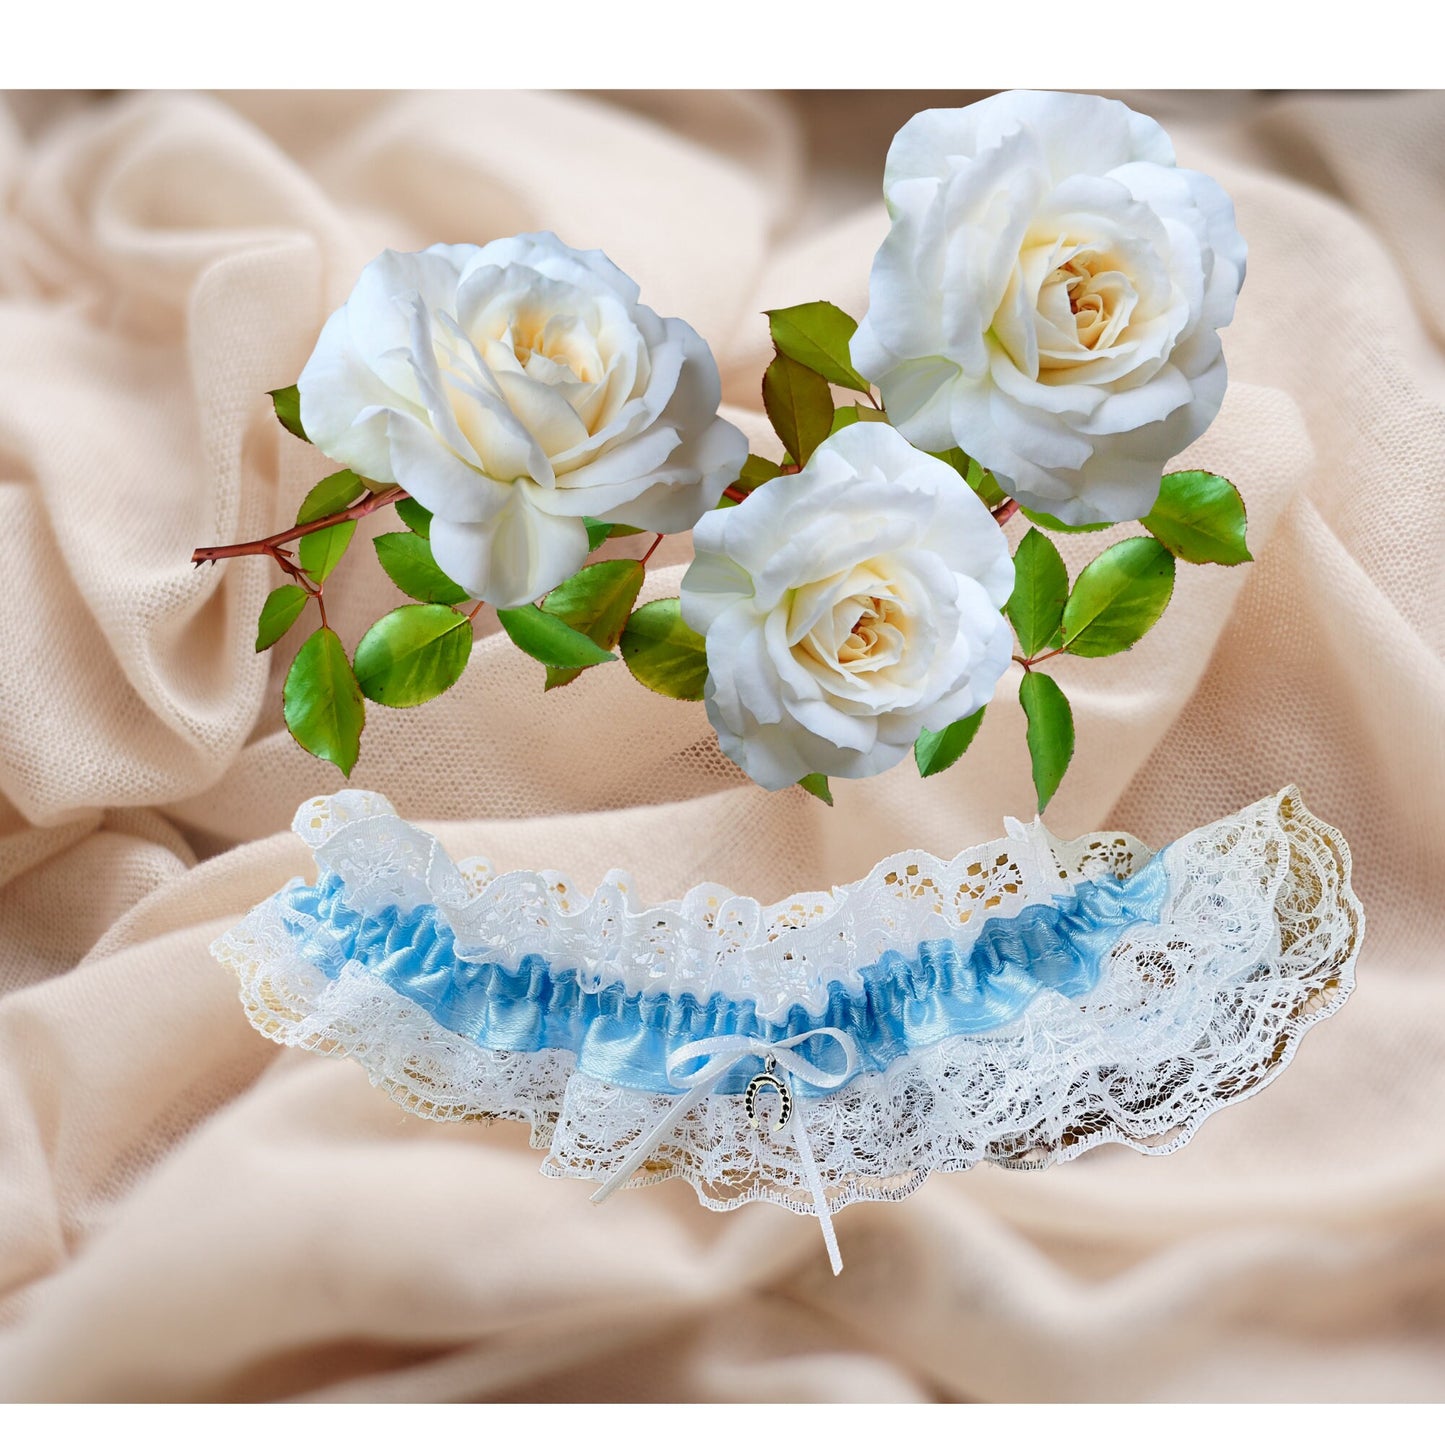 Something Blue Bridal Wedding Garter with Lucky Horseshoe